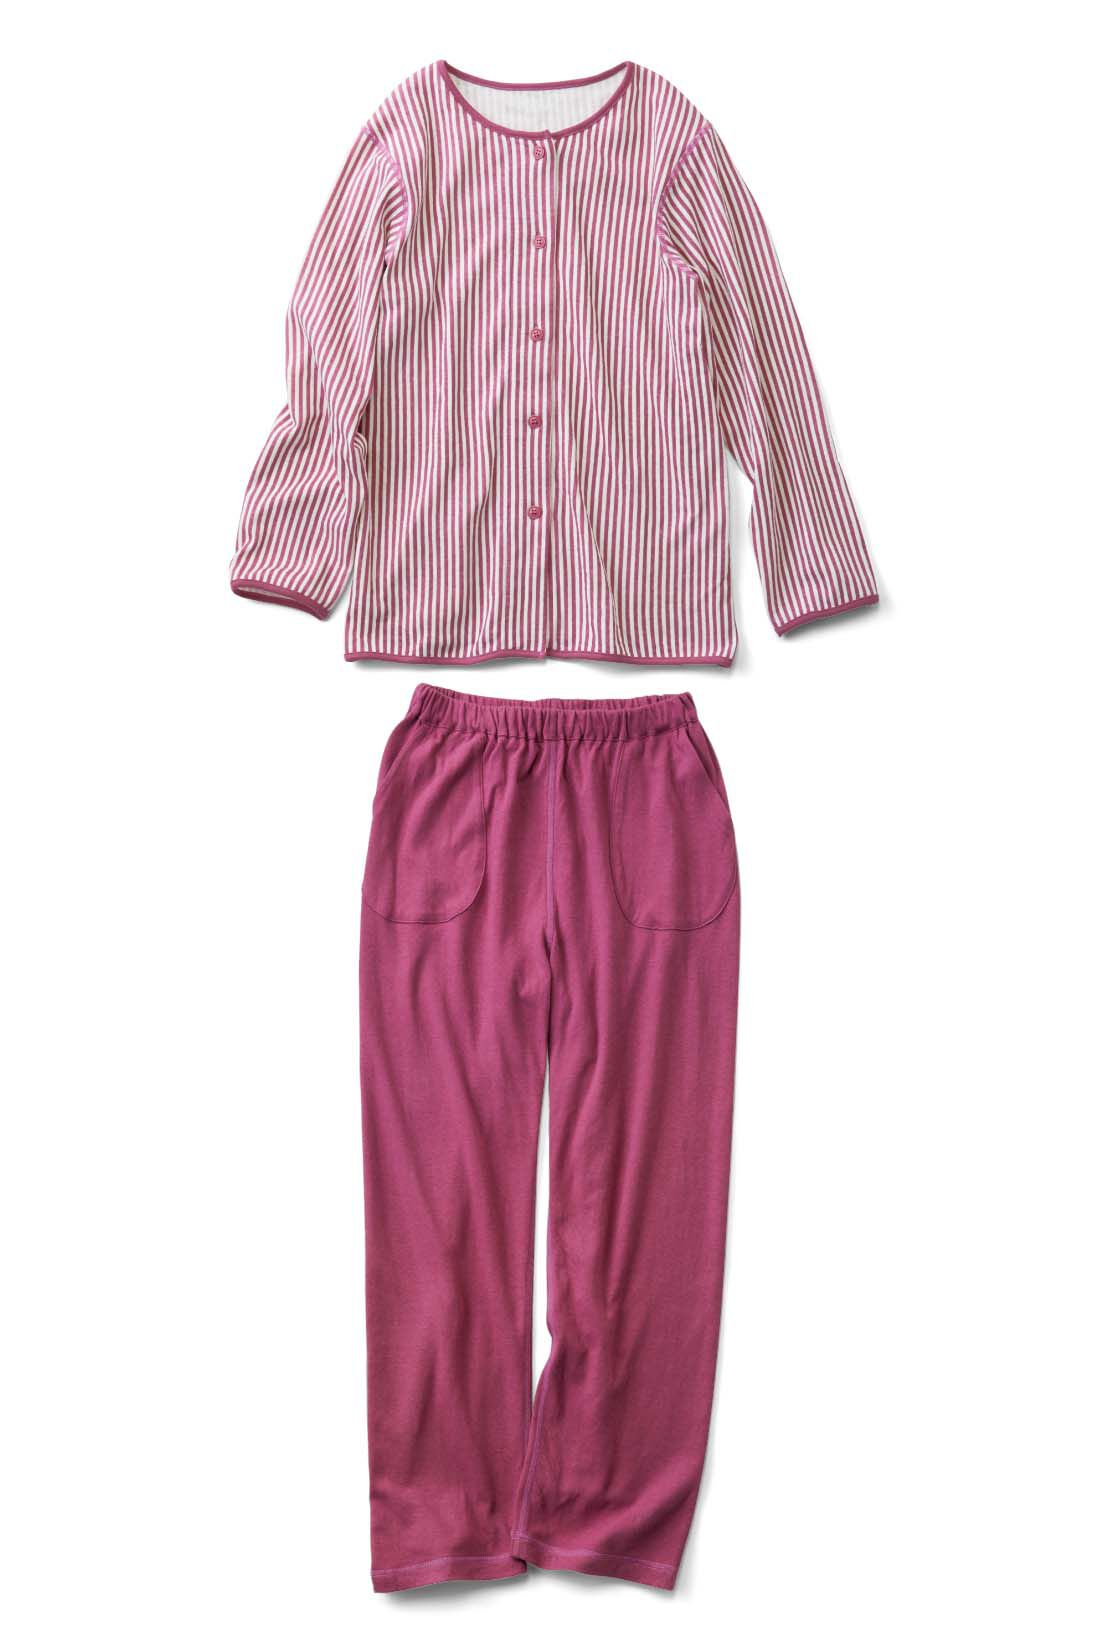 IEDIT|【おはだが気になるみんなへ】わきに縫い目がない 寝心地のよさに感動！ ふわふわ接結ガーゼパジャマ〈ピンク〉|肌にごろつかないように、ポケットも外付けに。